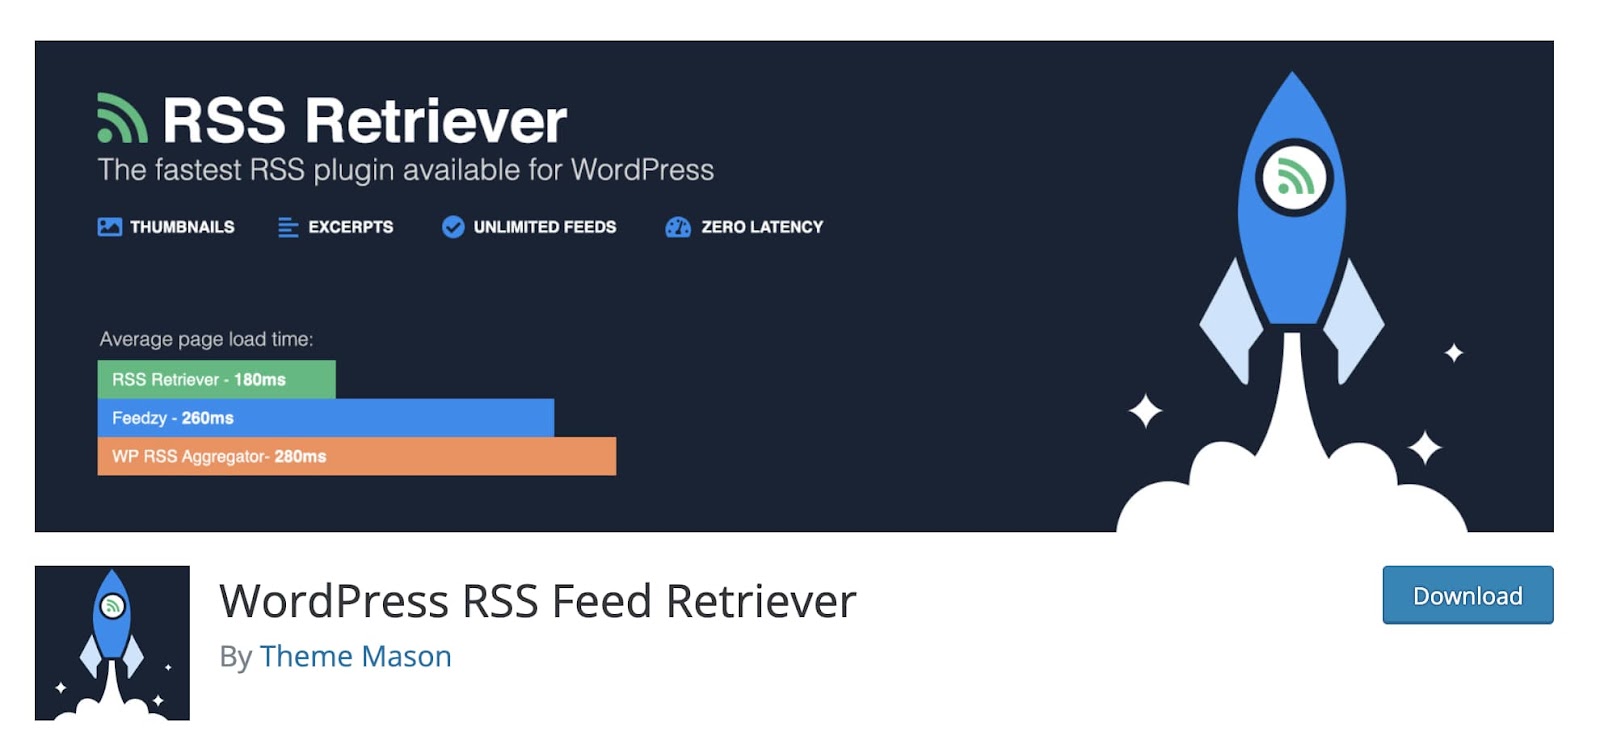 RSS retriever